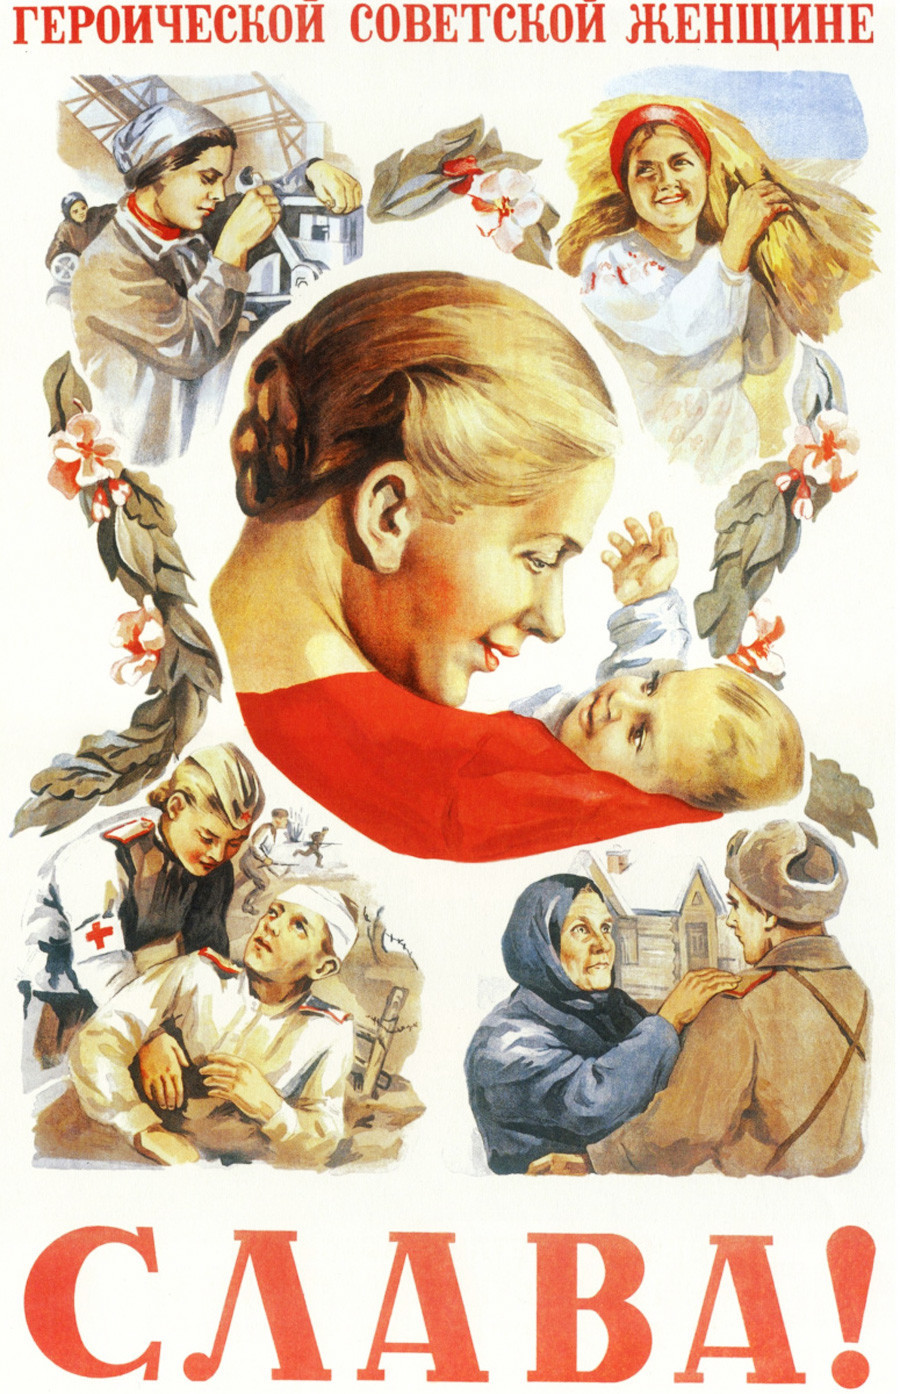 Slava sovjetskoj ženi heroju!

